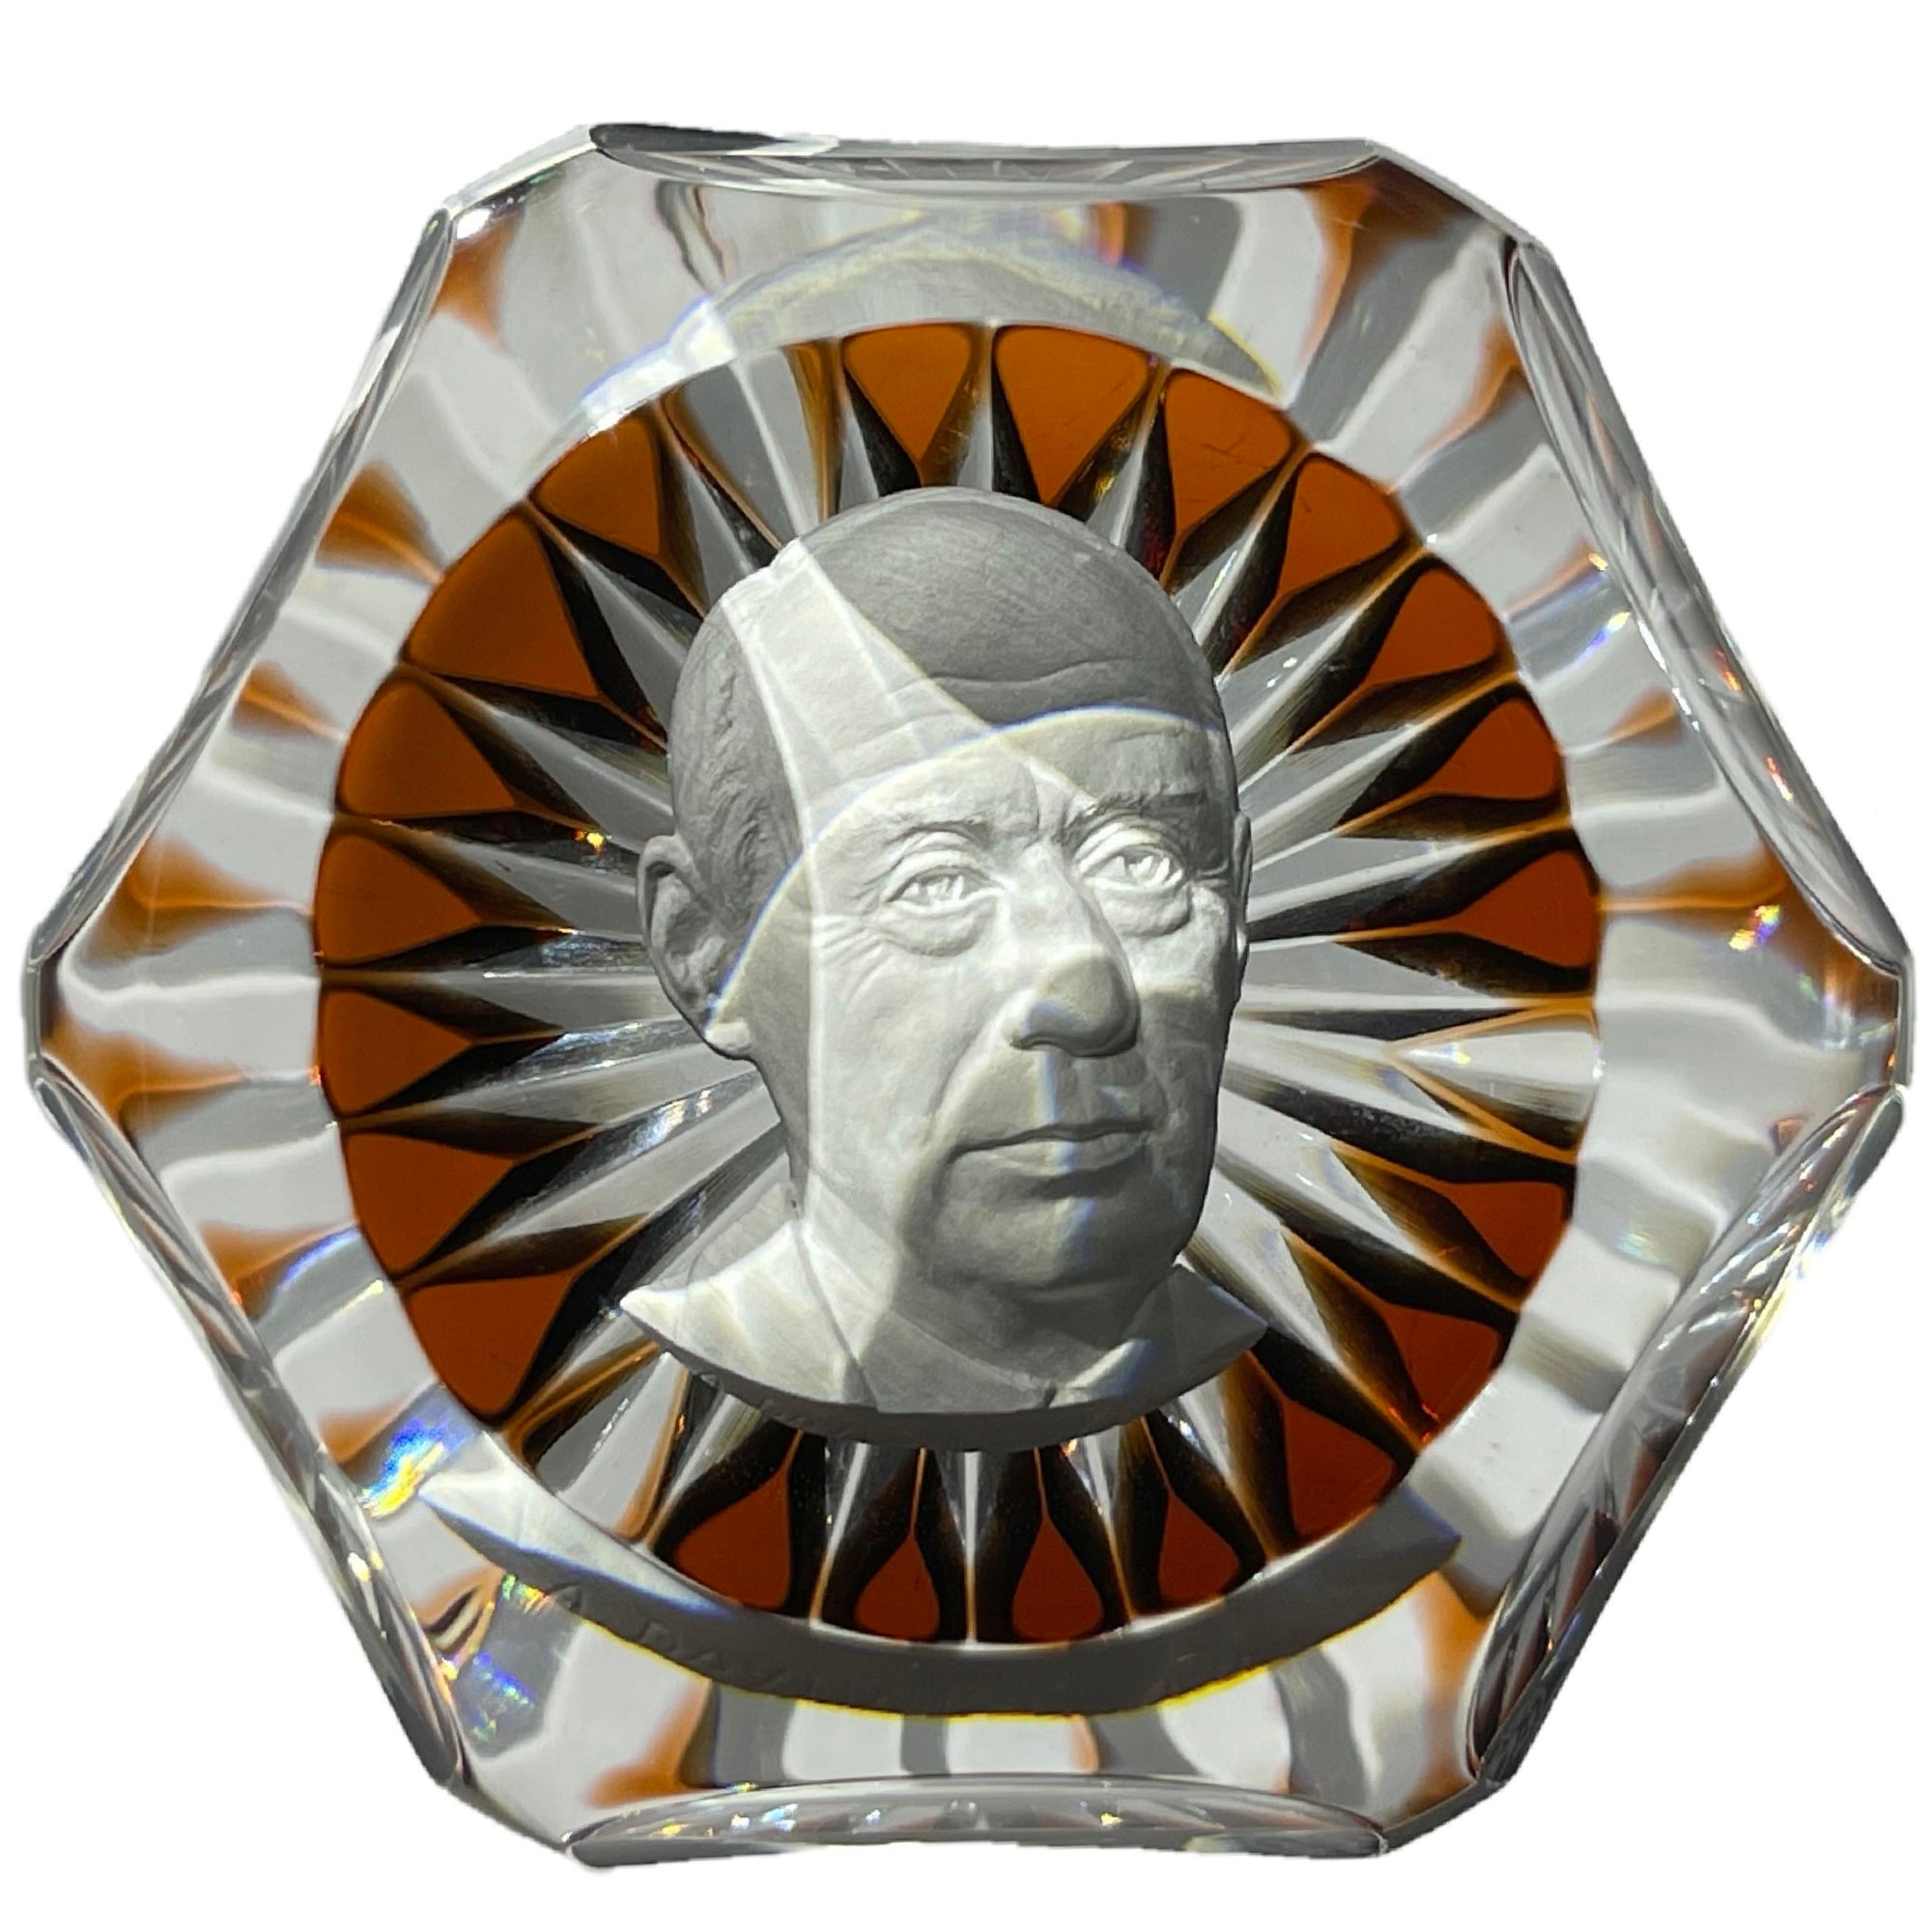 Faceted Baccarat Crystal 1969 Adlai Stevenson Sulphide on Transparent Amber